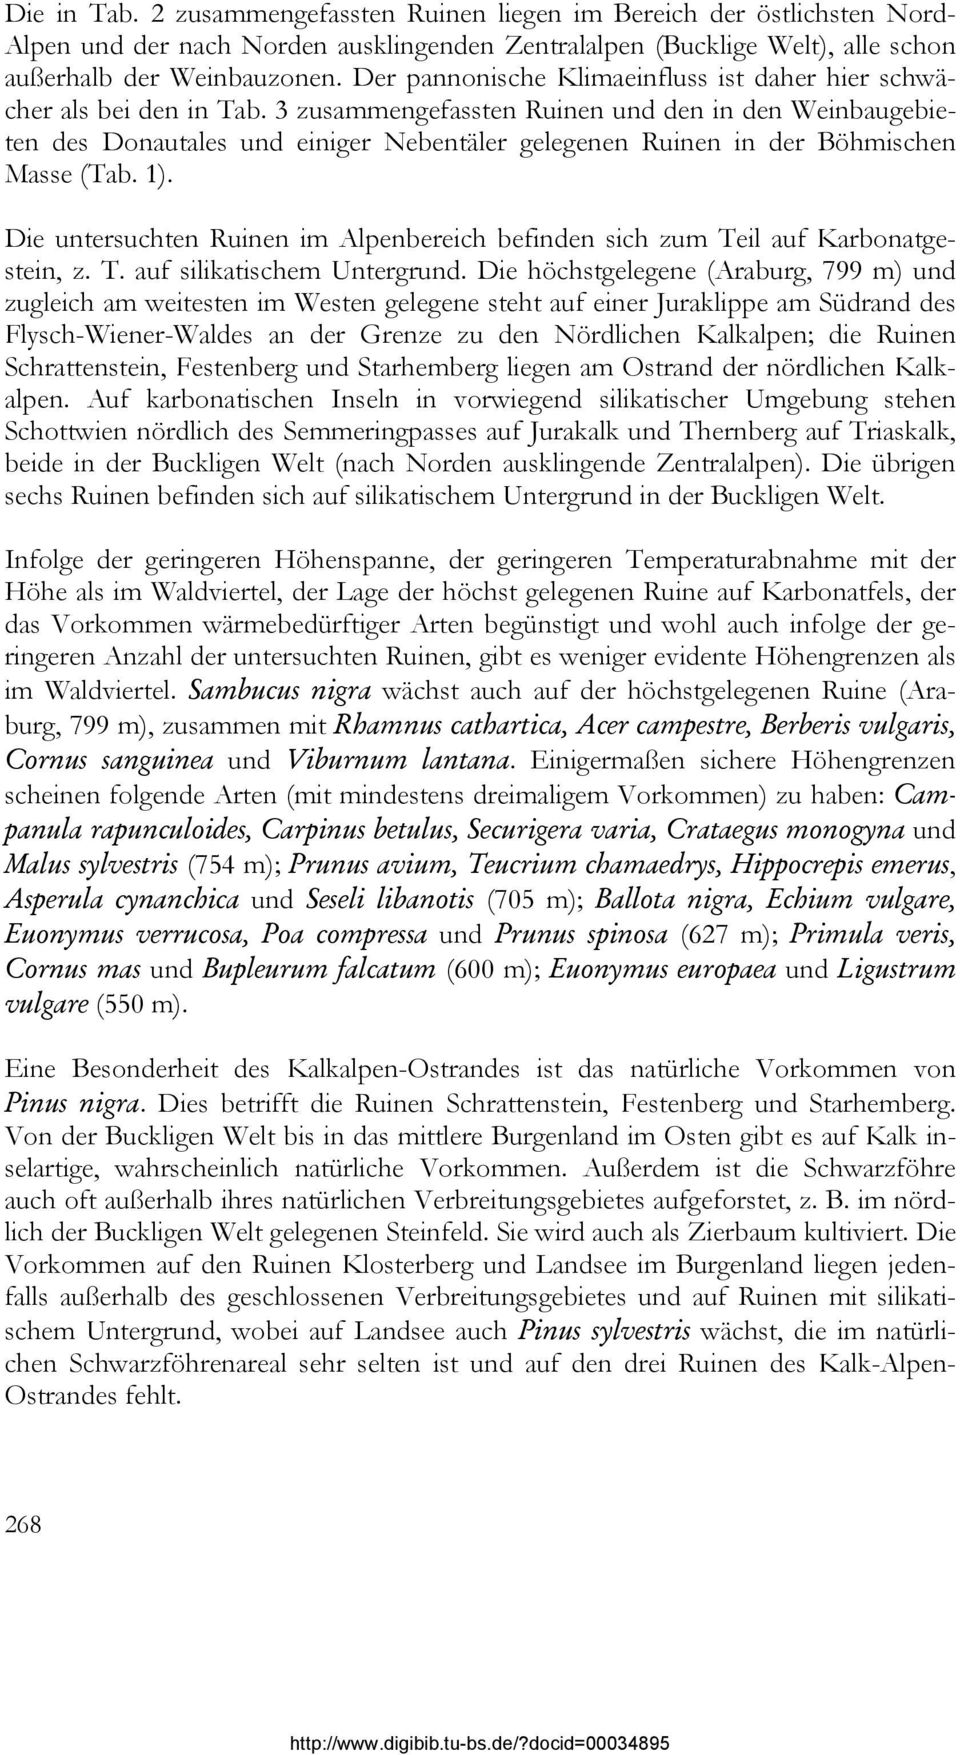 3 zusammengefassten Ruinen und den in den Weinbaugebieten des Donautales und einiger Nebentäler gelegenen Ruinen in der Böhmischen Masse (Tab. 1).